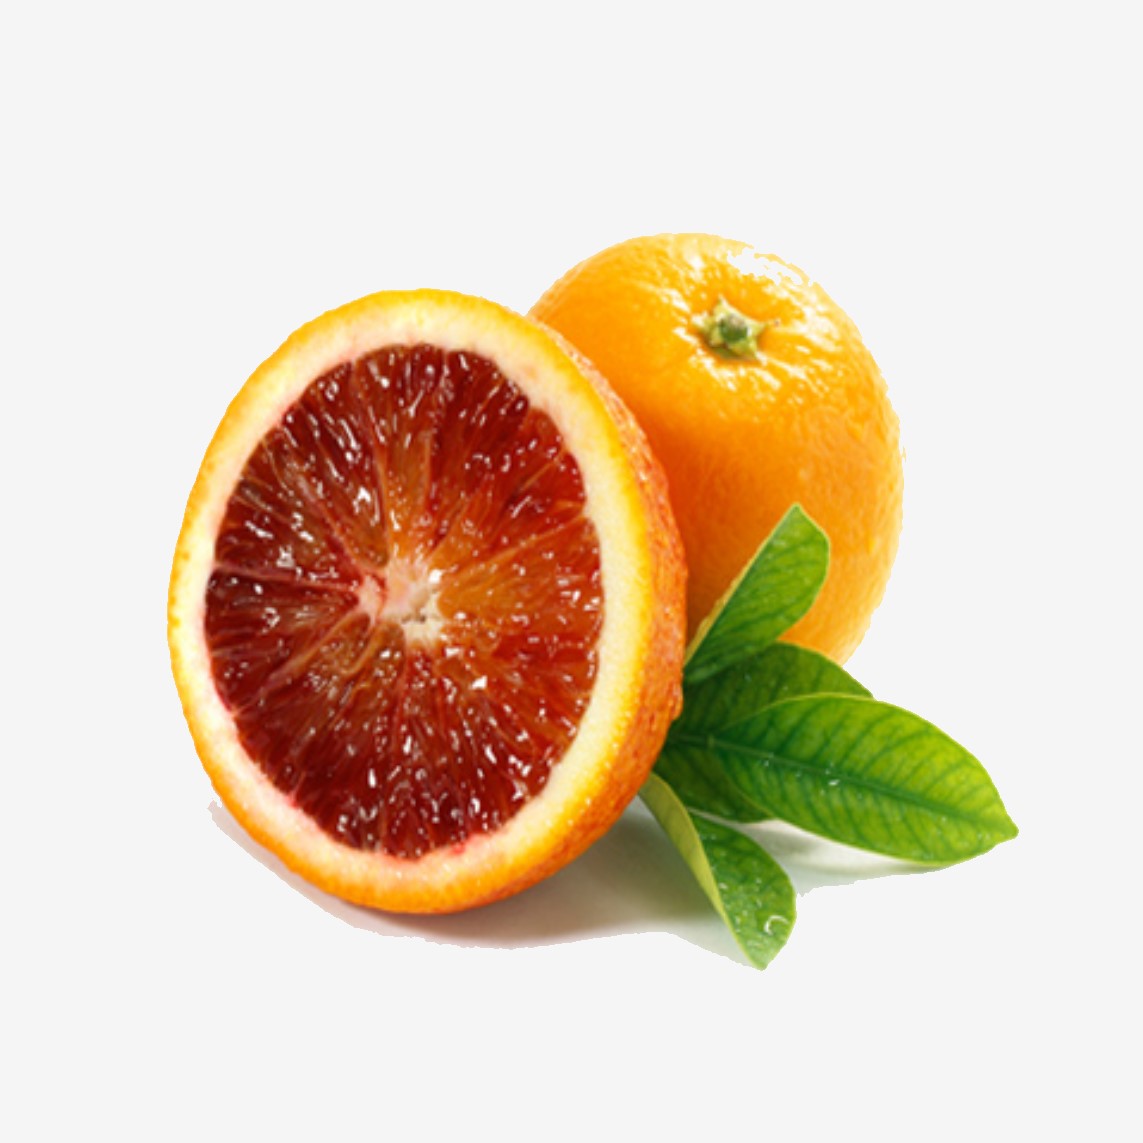 پرتقال خونی یا توسرخ عرضه شده در فروشگاه اینترنتی گل میوه